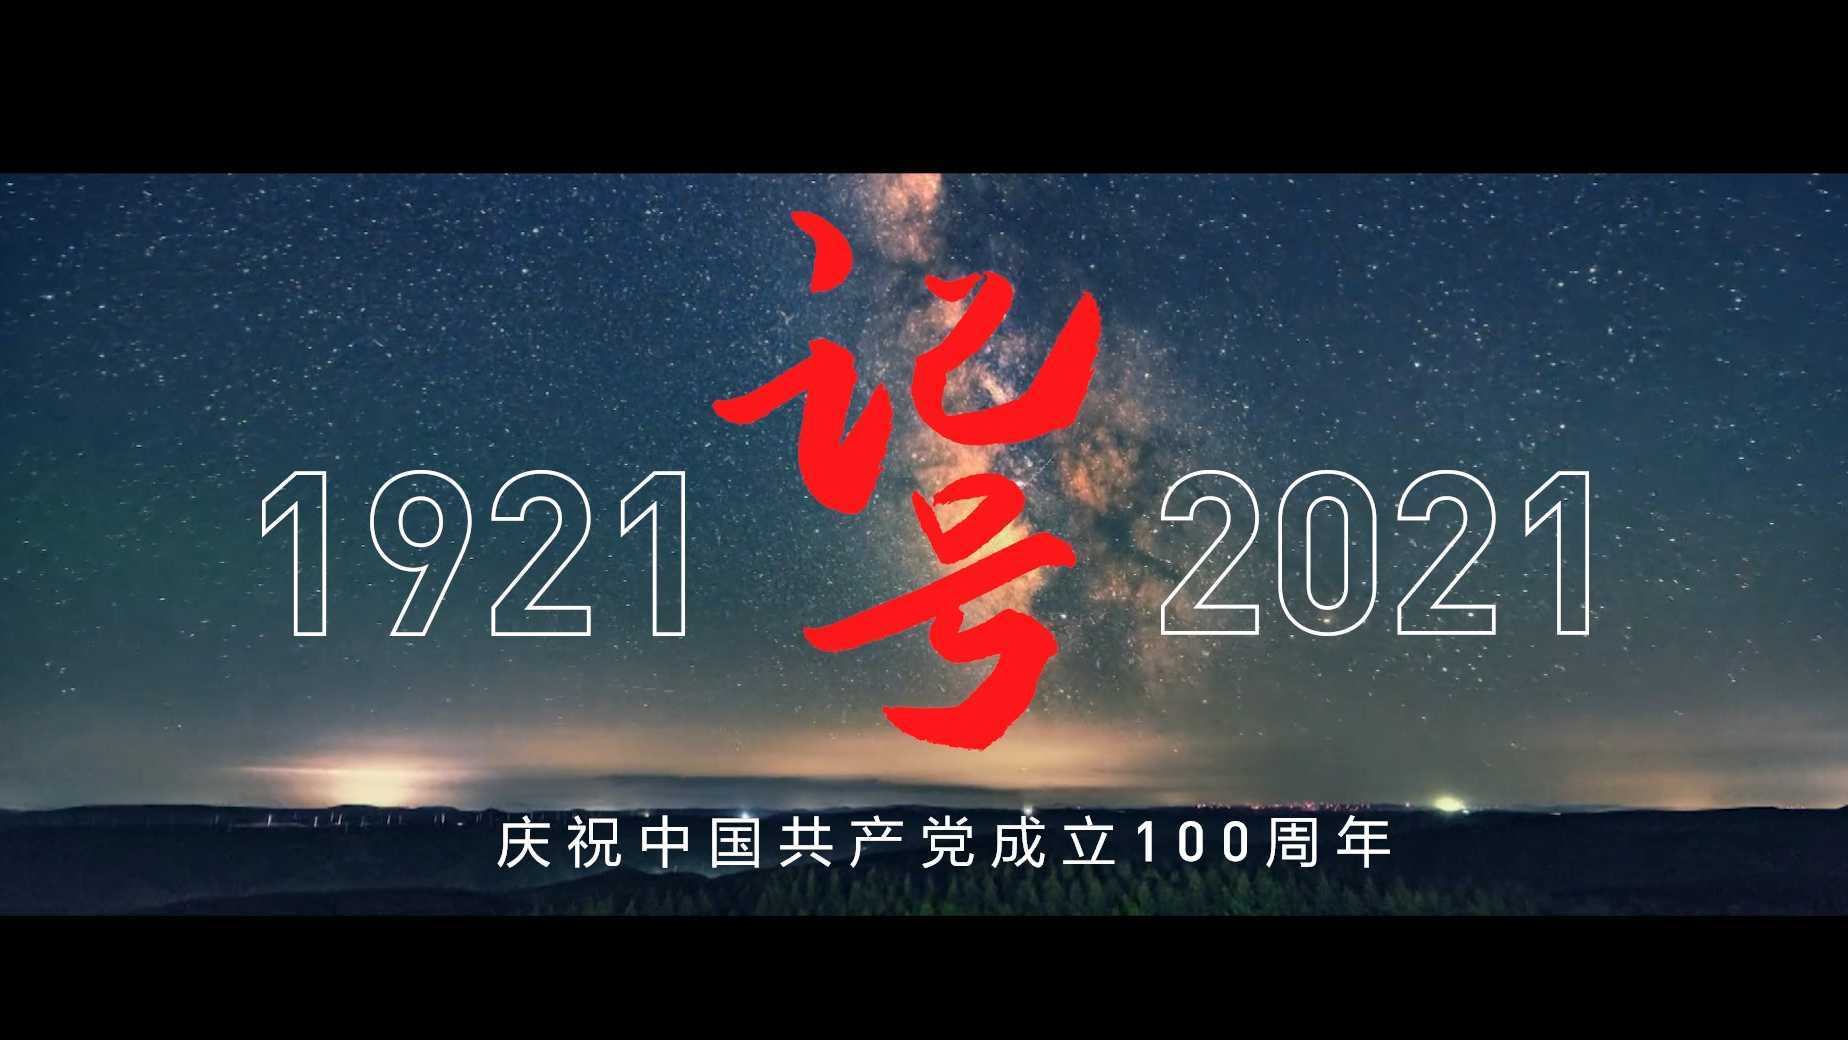 央视新闻×网易云音乐 |《记号》庆祝中国共产党成立100周年